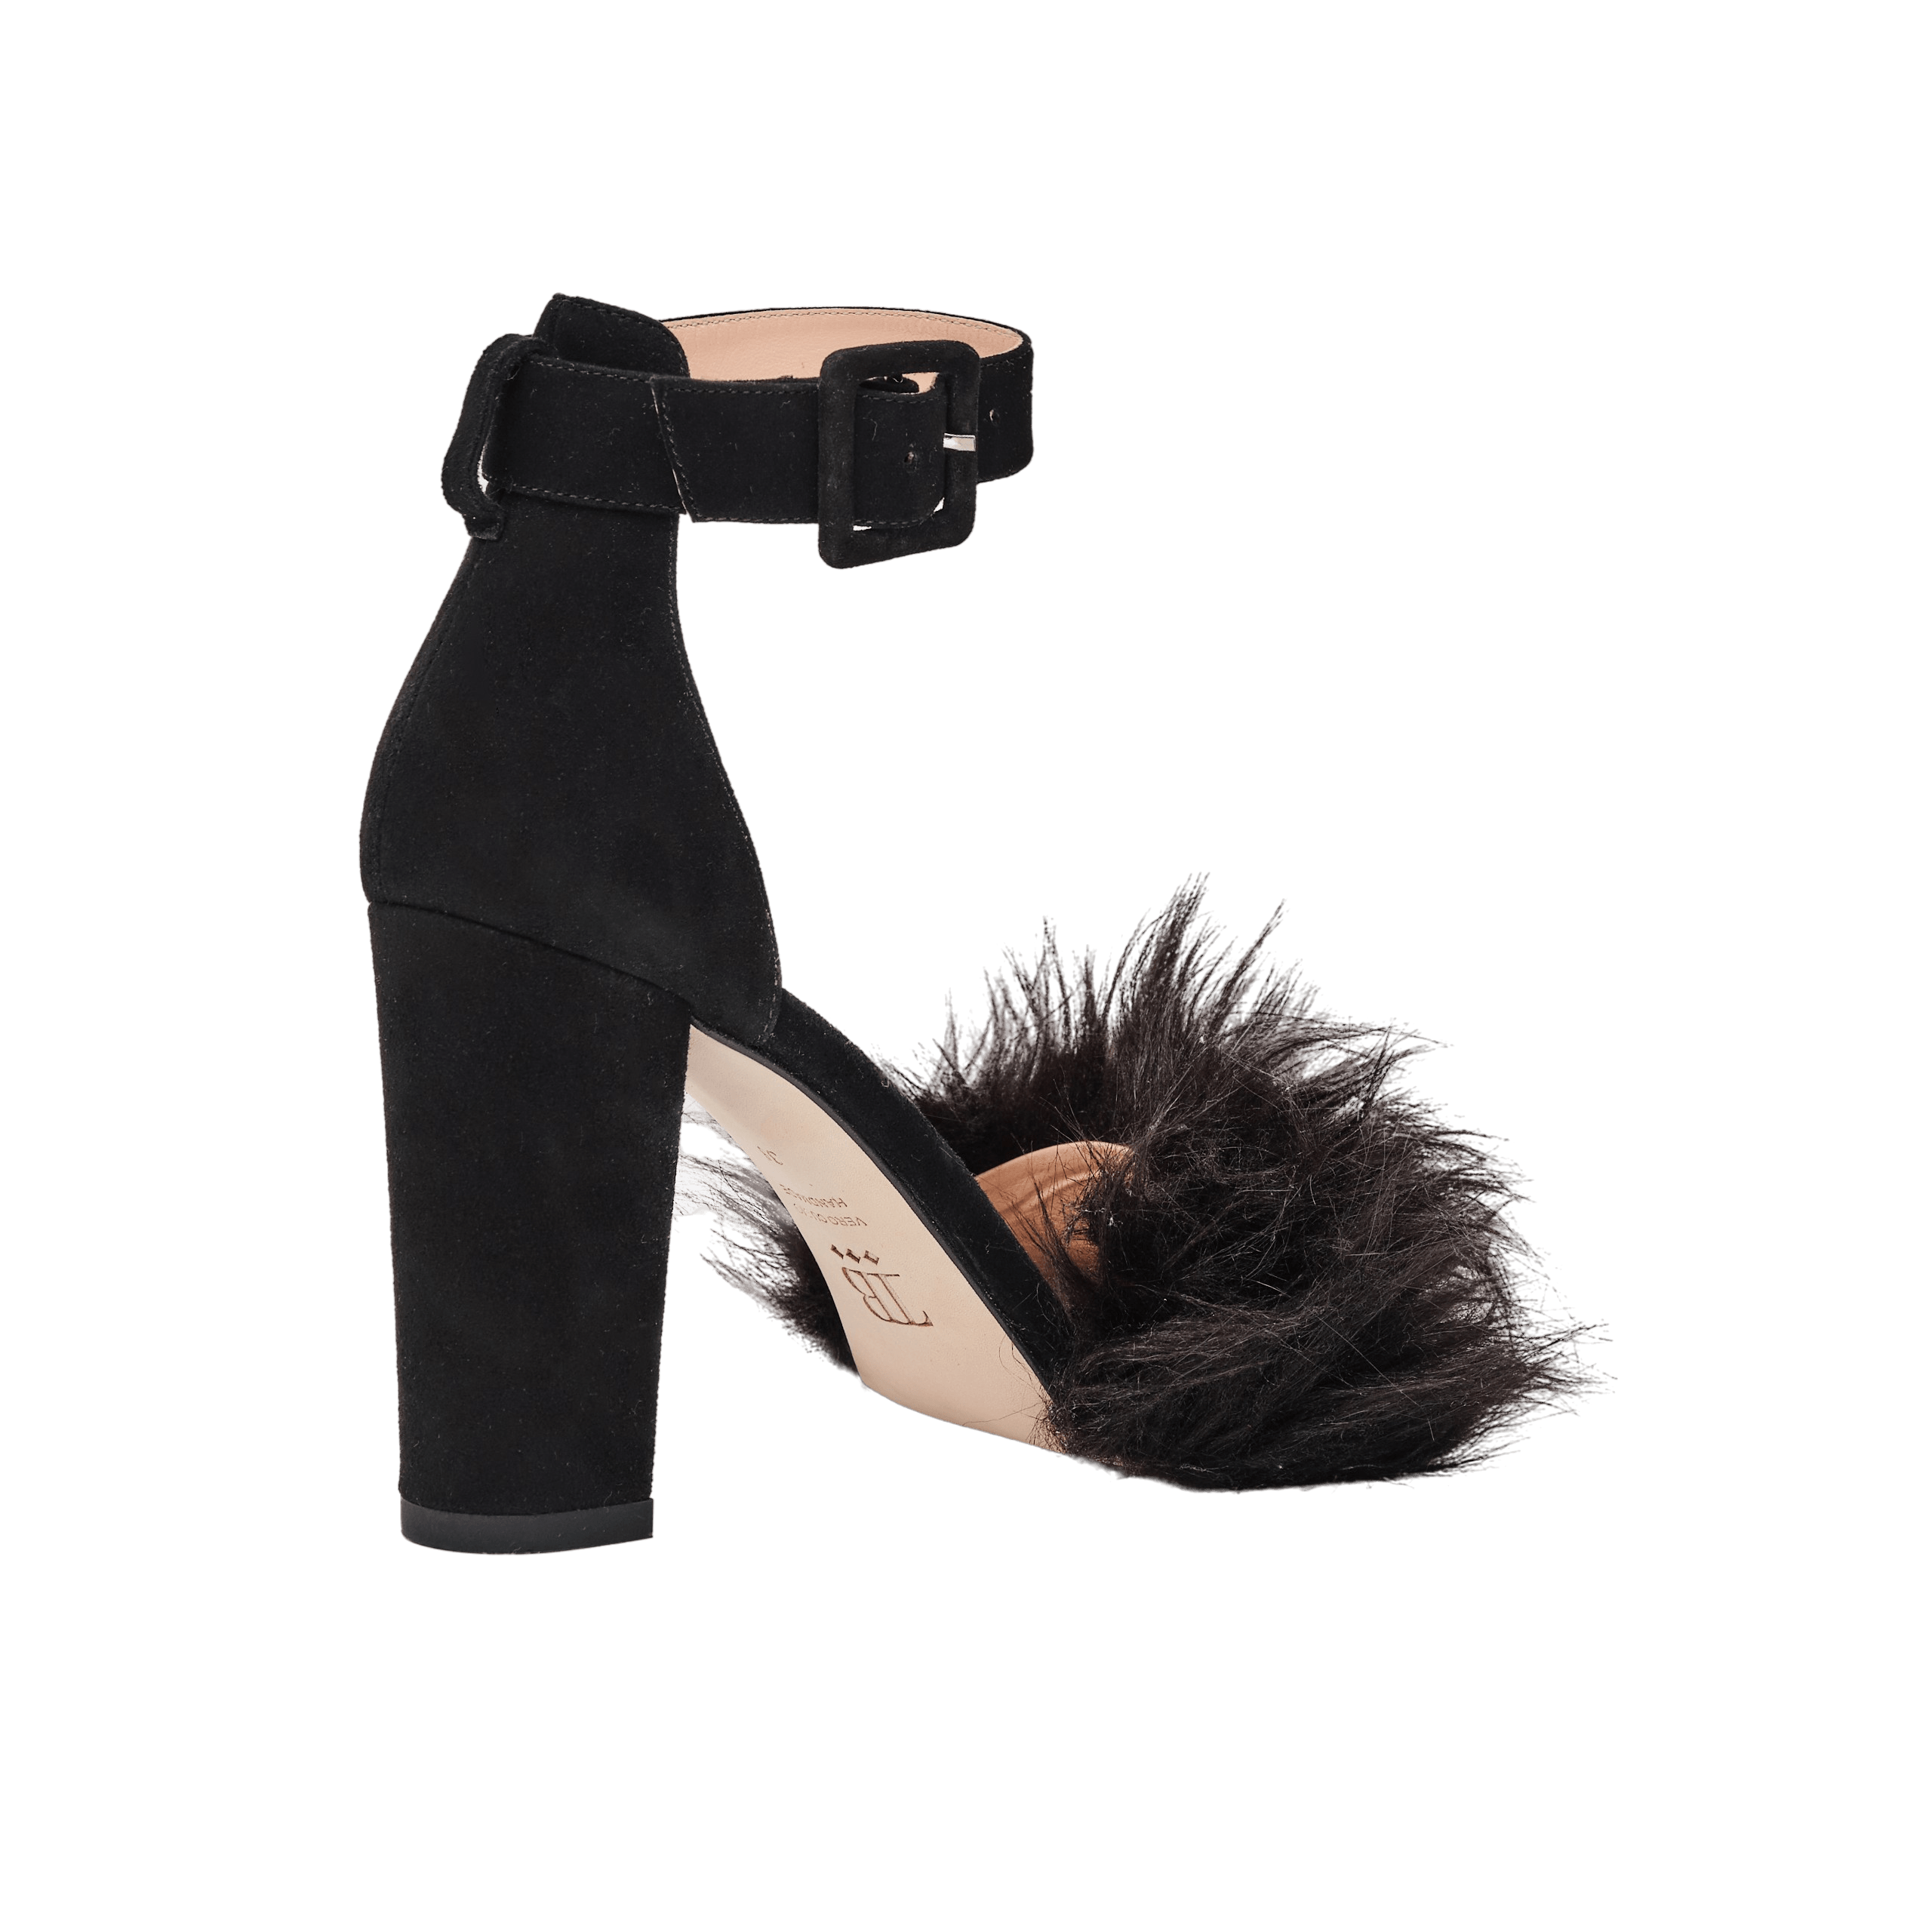 Samle Et hundrede år span Buy Online | Naomi-Black Block Heels pumps